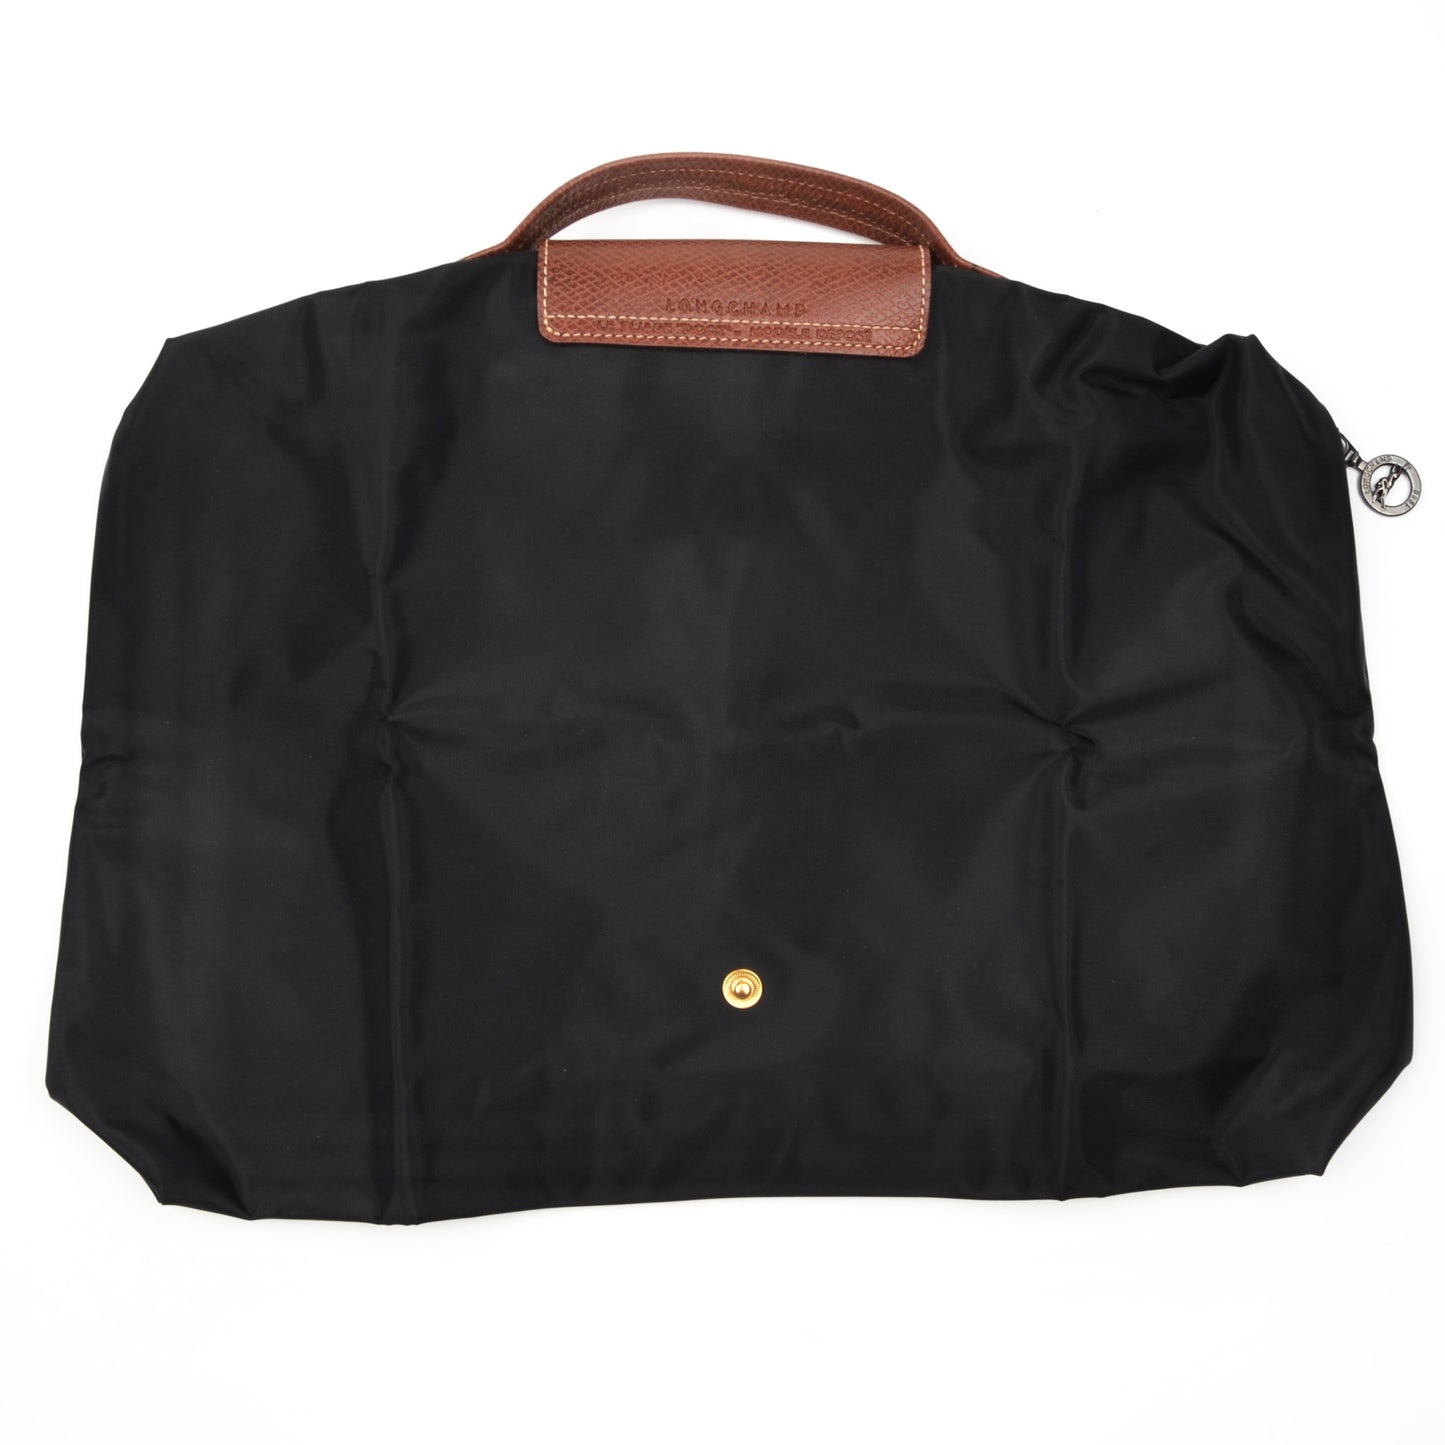 Longchamp Paris Les Pliage Bag "Docs" - Black